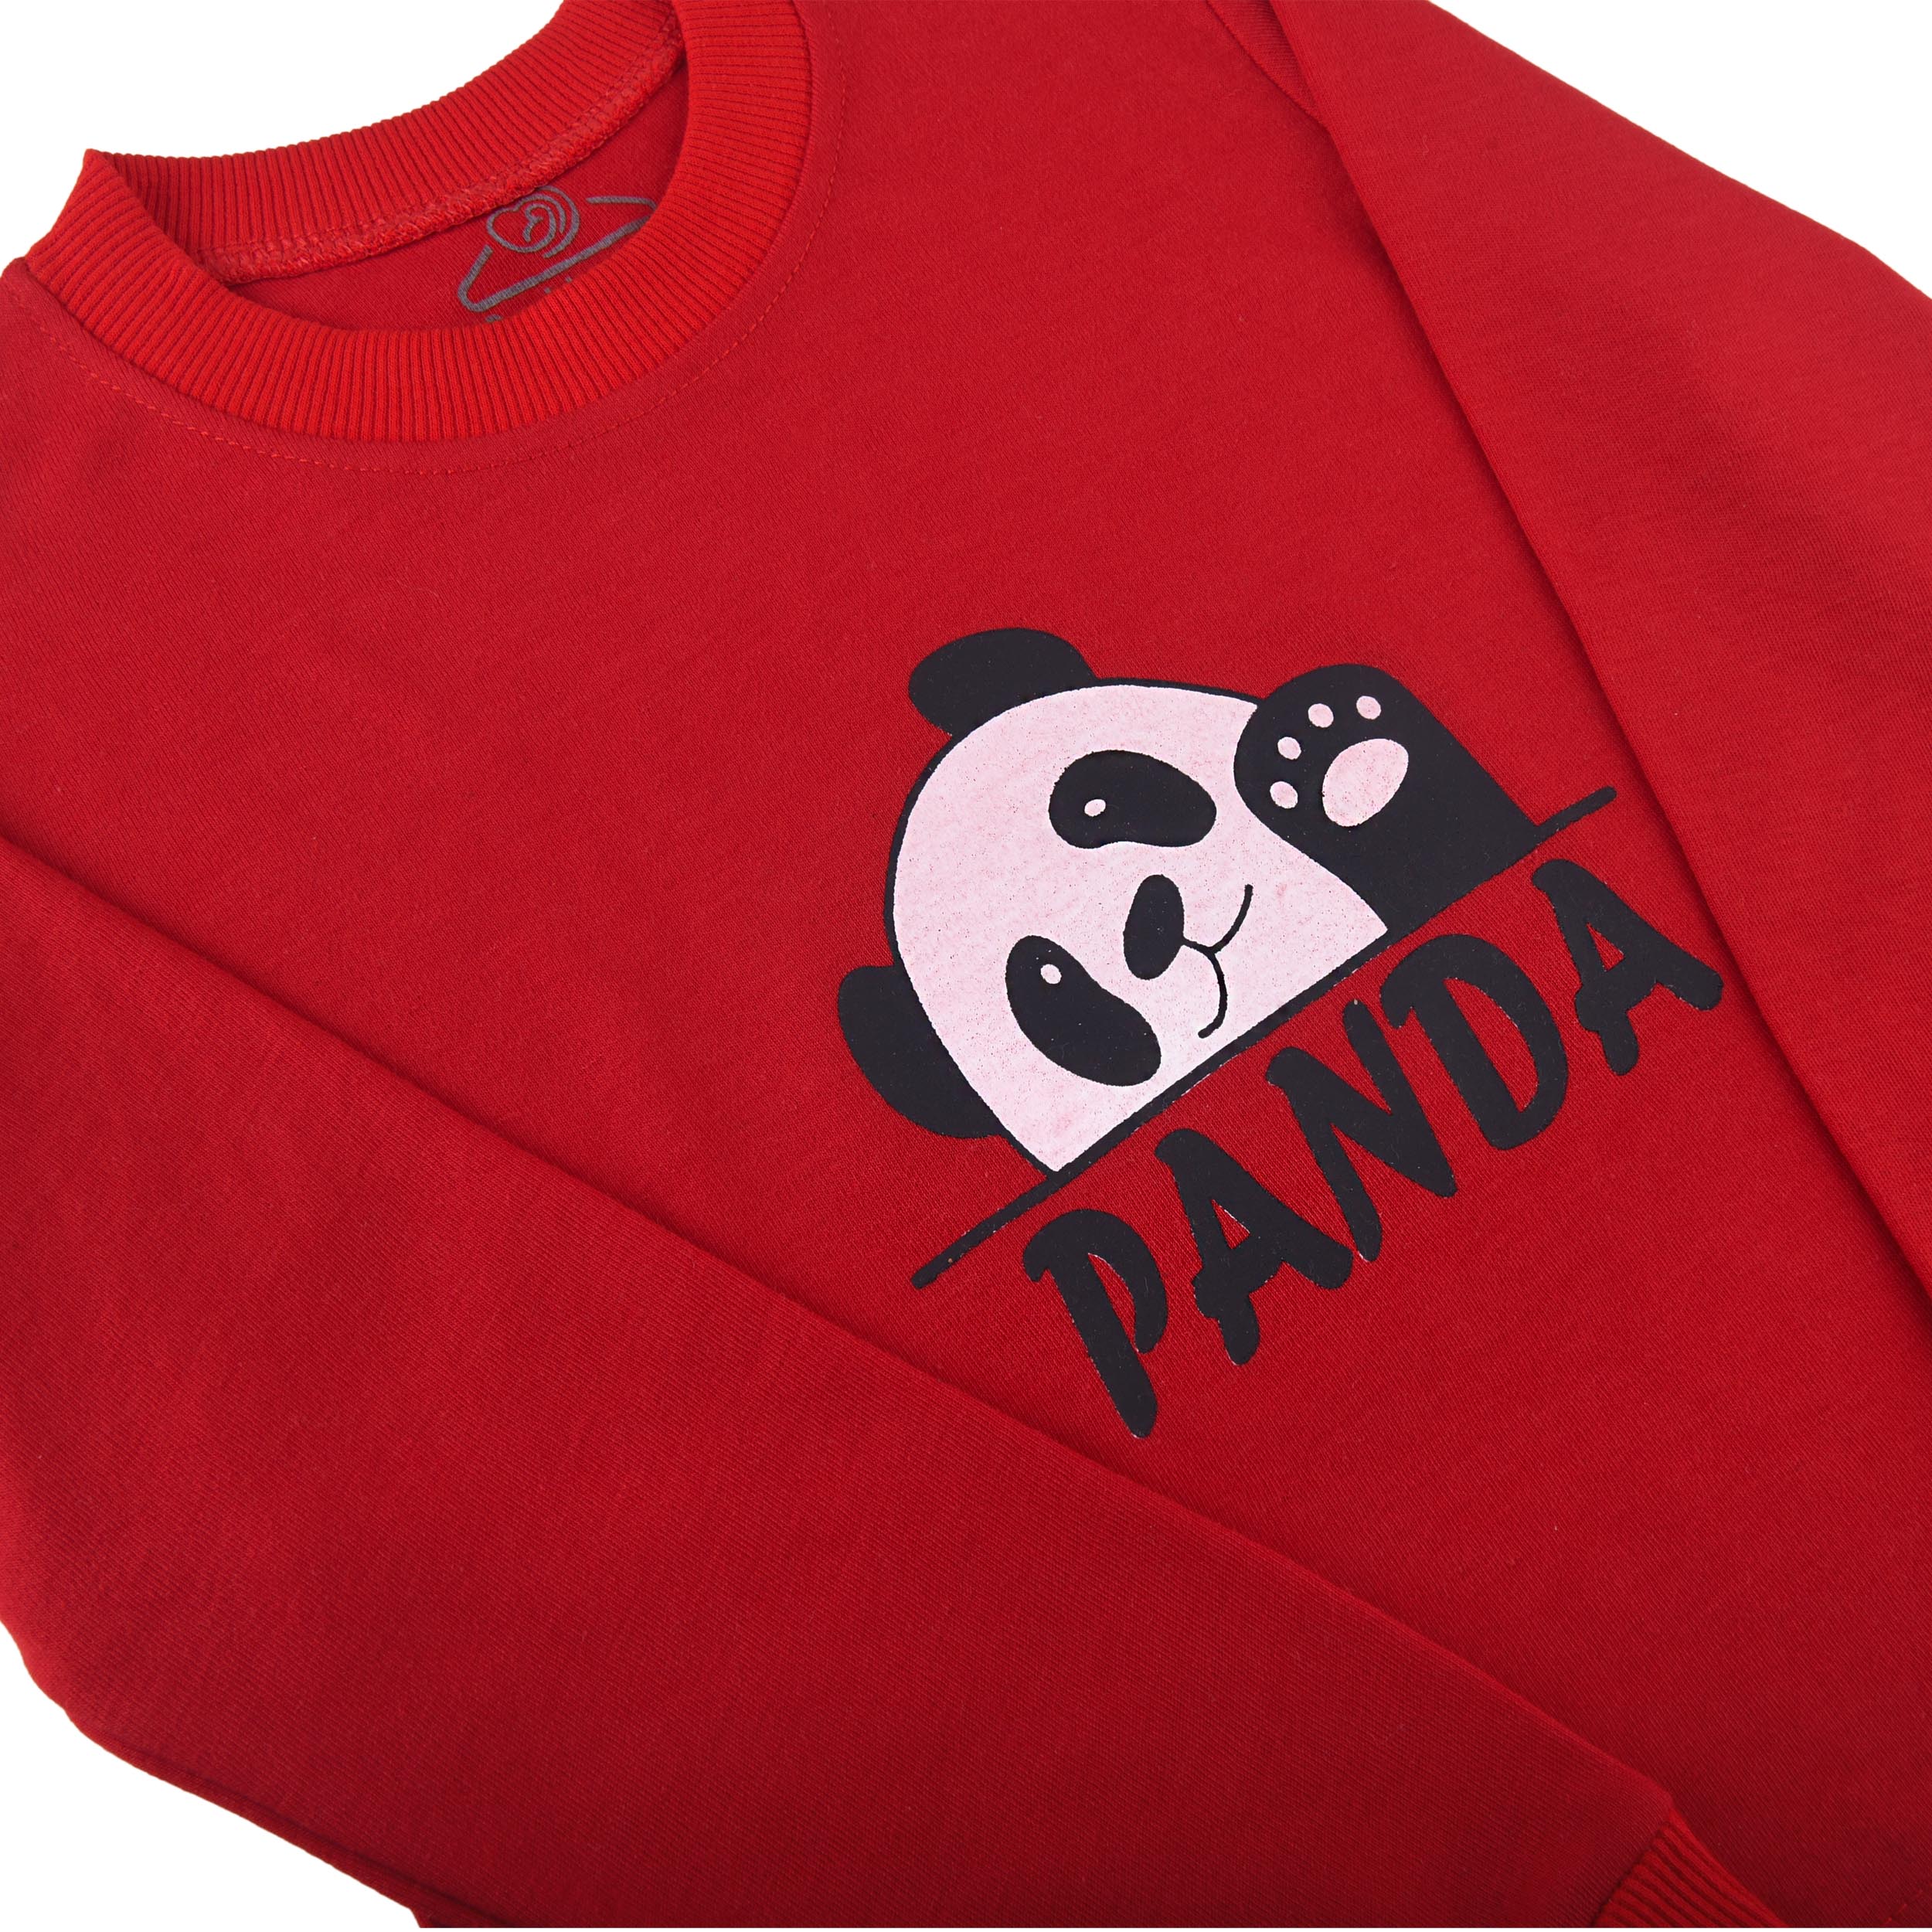 ست تی شرت و شلوار بچگانه سپیدپوش مدل پاندا کد 3030 -  - 3